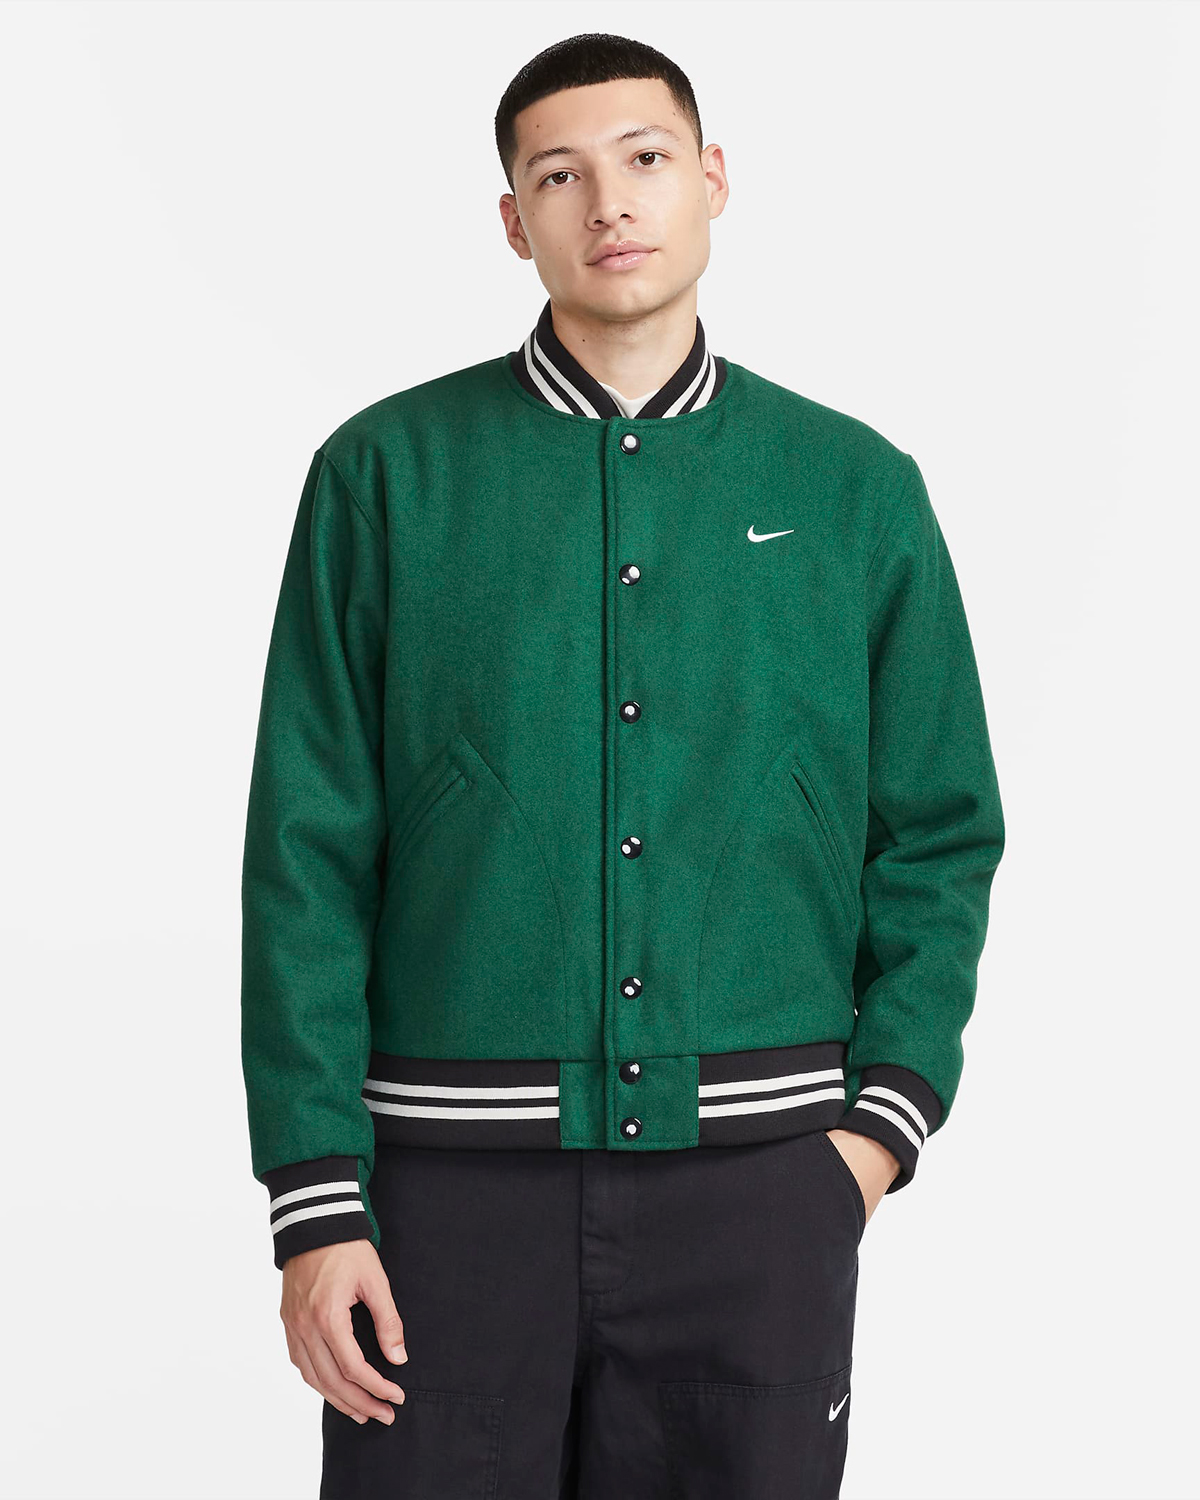 Nike-Gorge-Green-Varsity-Jacket